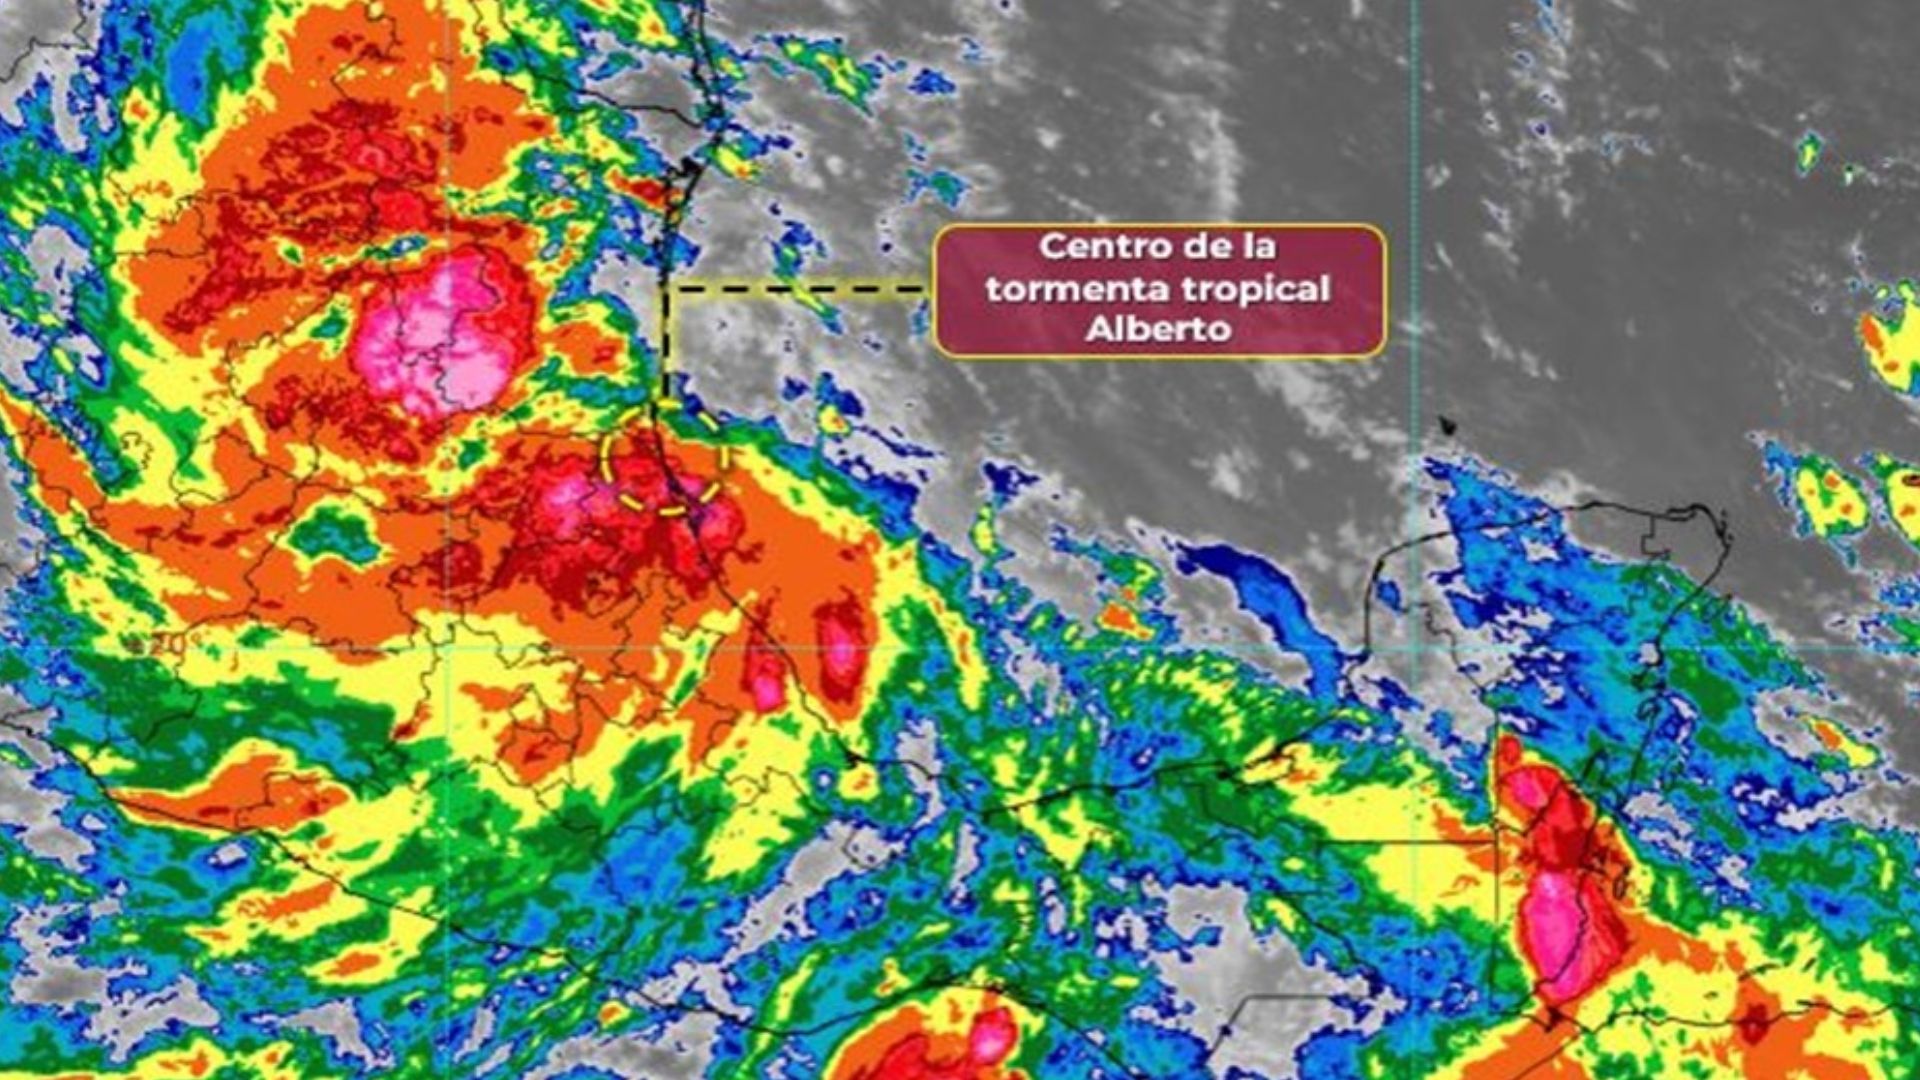 Toca tierra tormenta tropical Alberto; alerta en Ciudad Madero, Tamaulipas